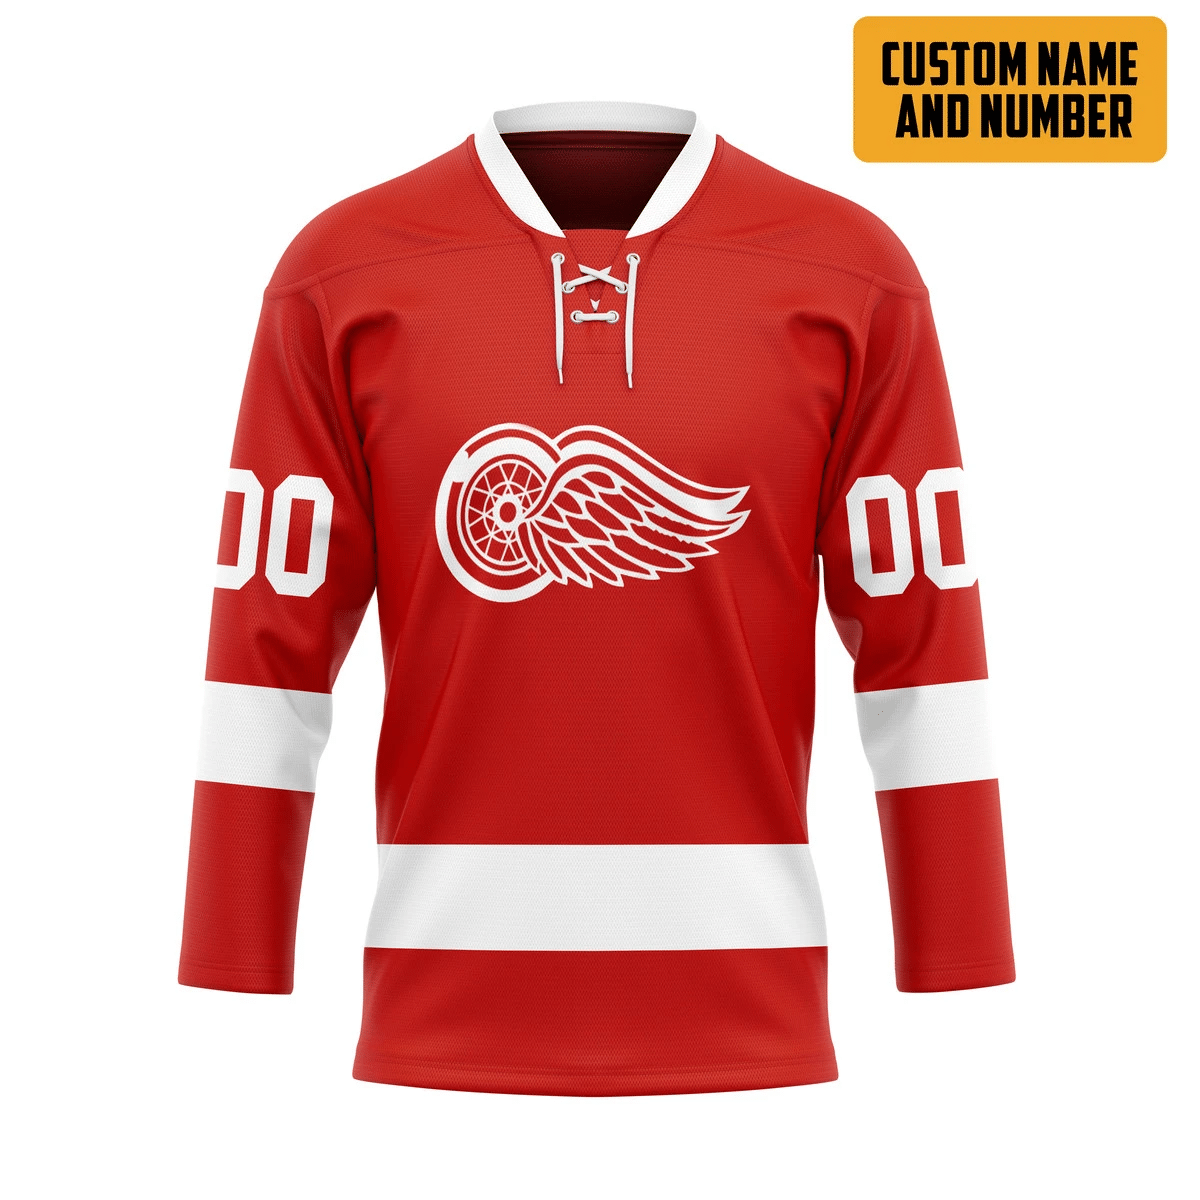 It's only $50 so don't miss out - Be sure to pick up a new hockey shirt today! 363